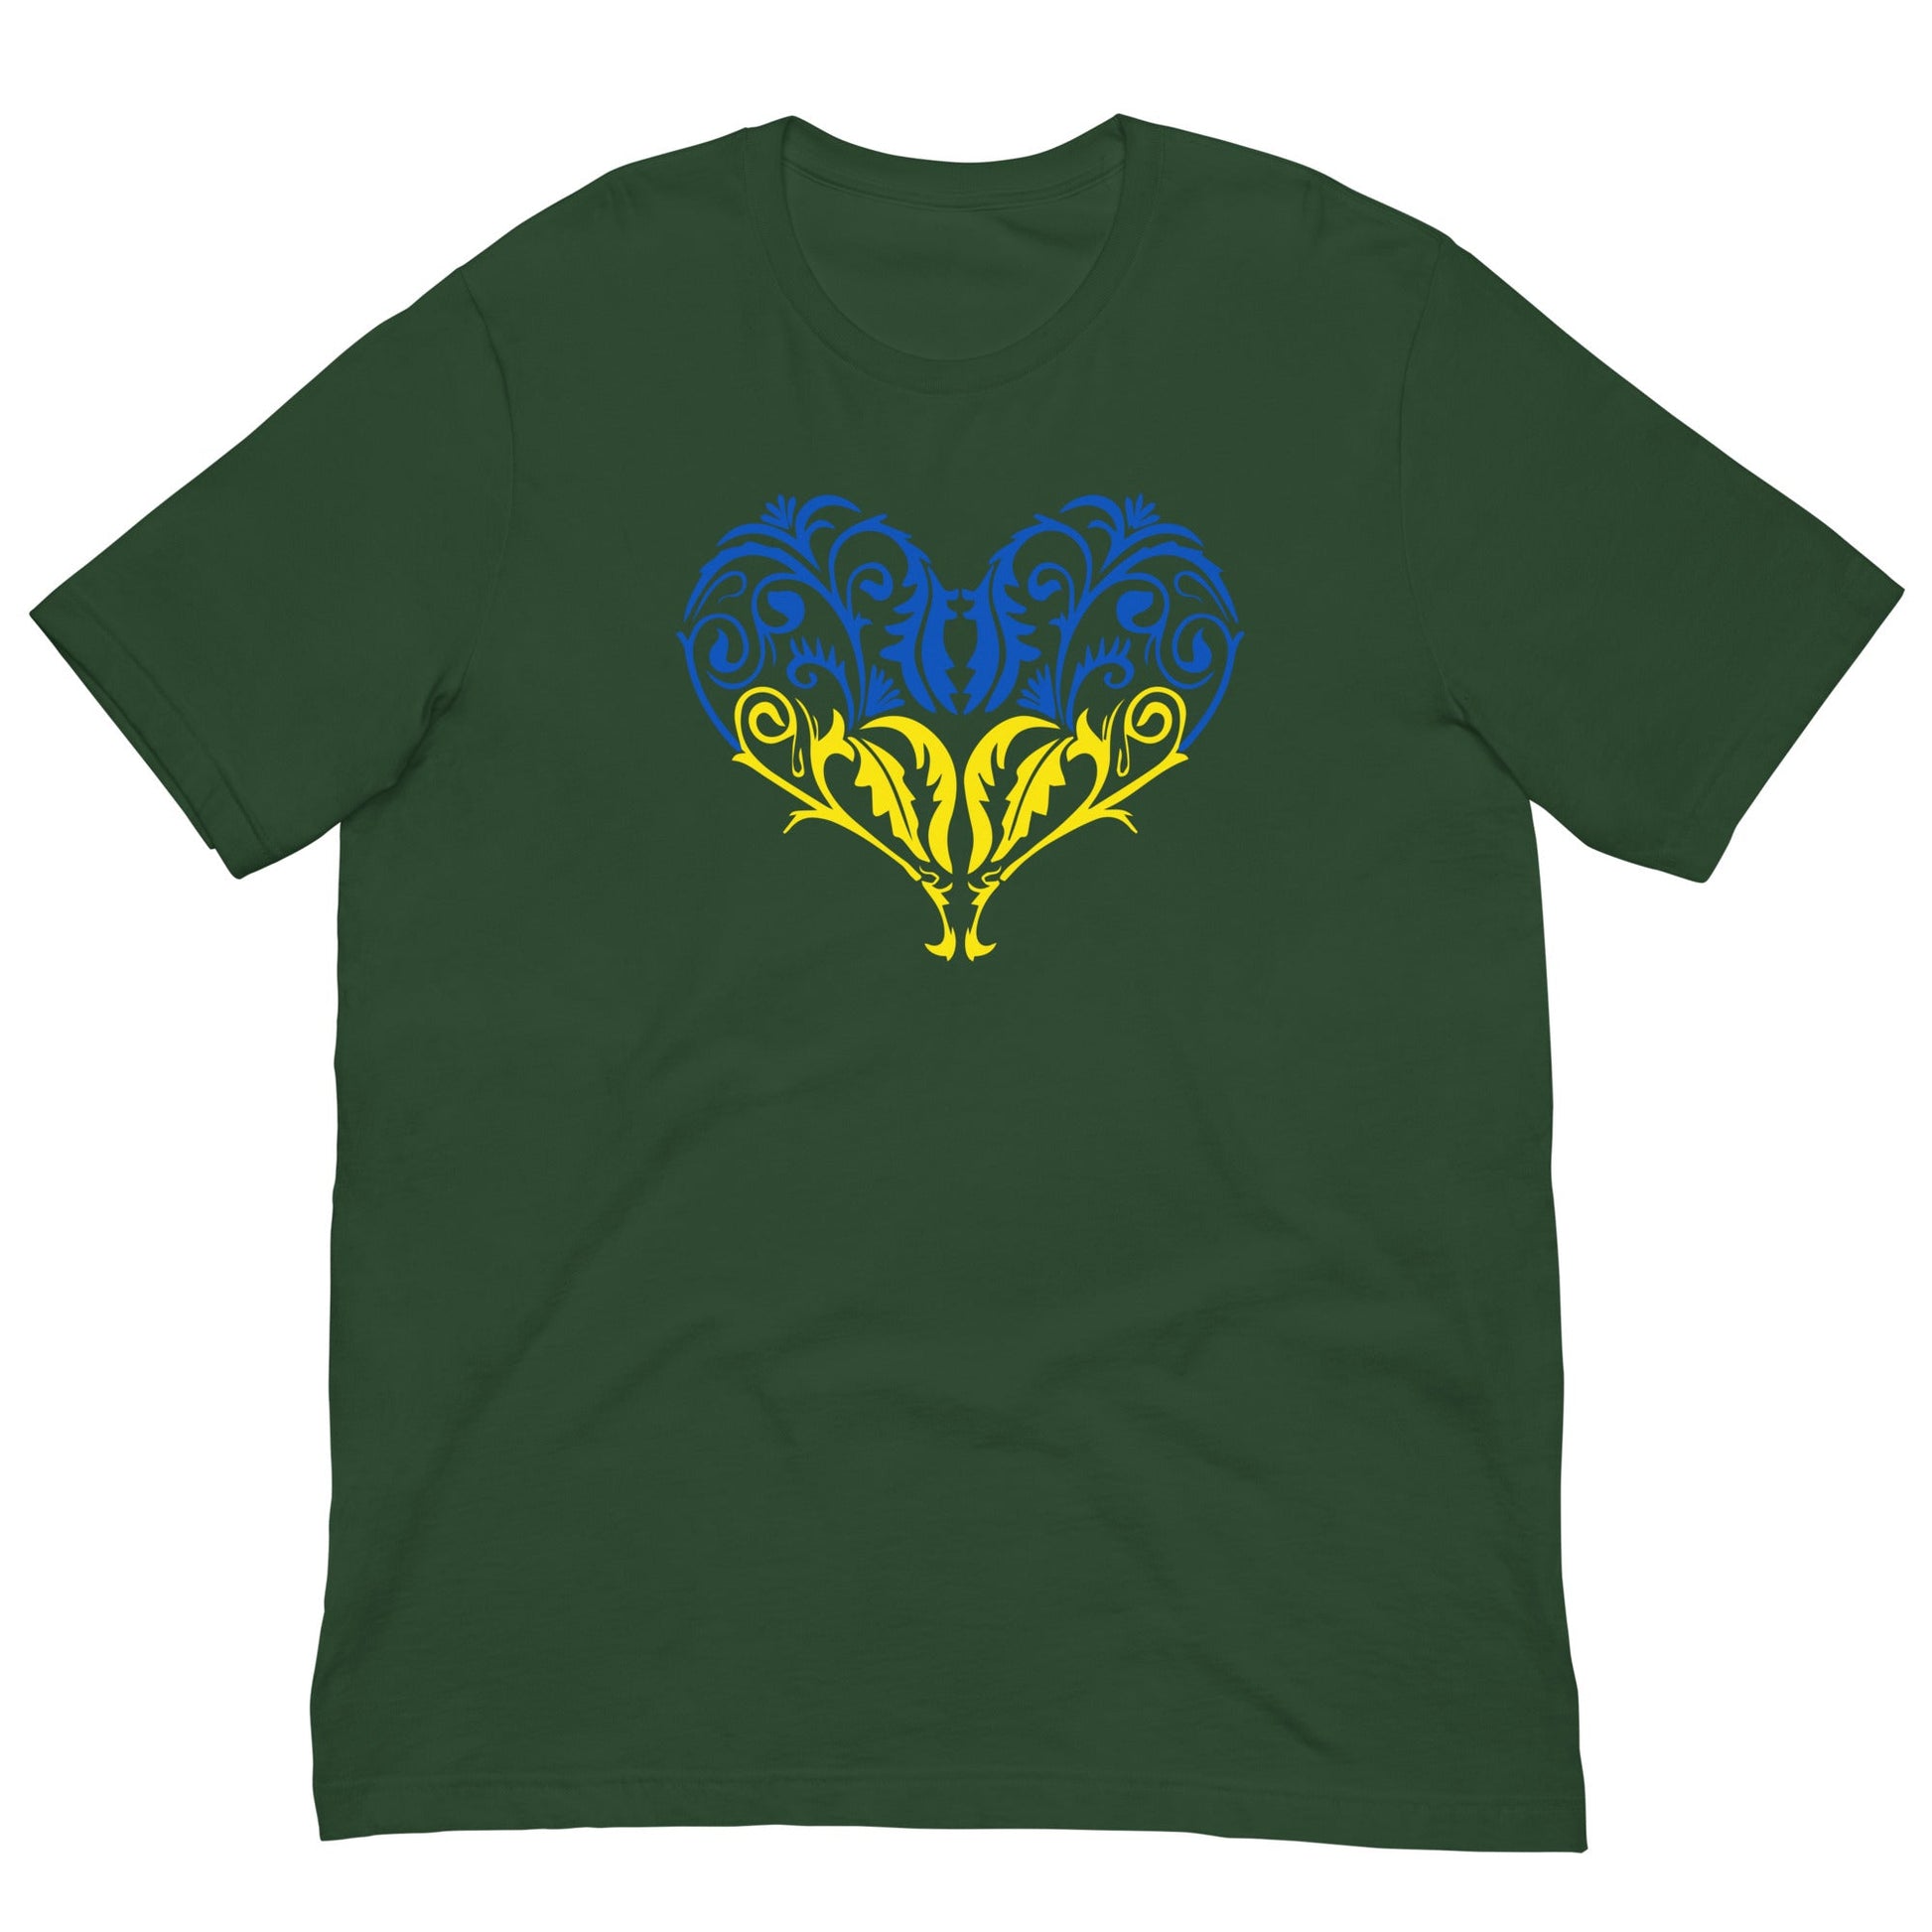 Ukraine flag heart T-shirt Forest / S